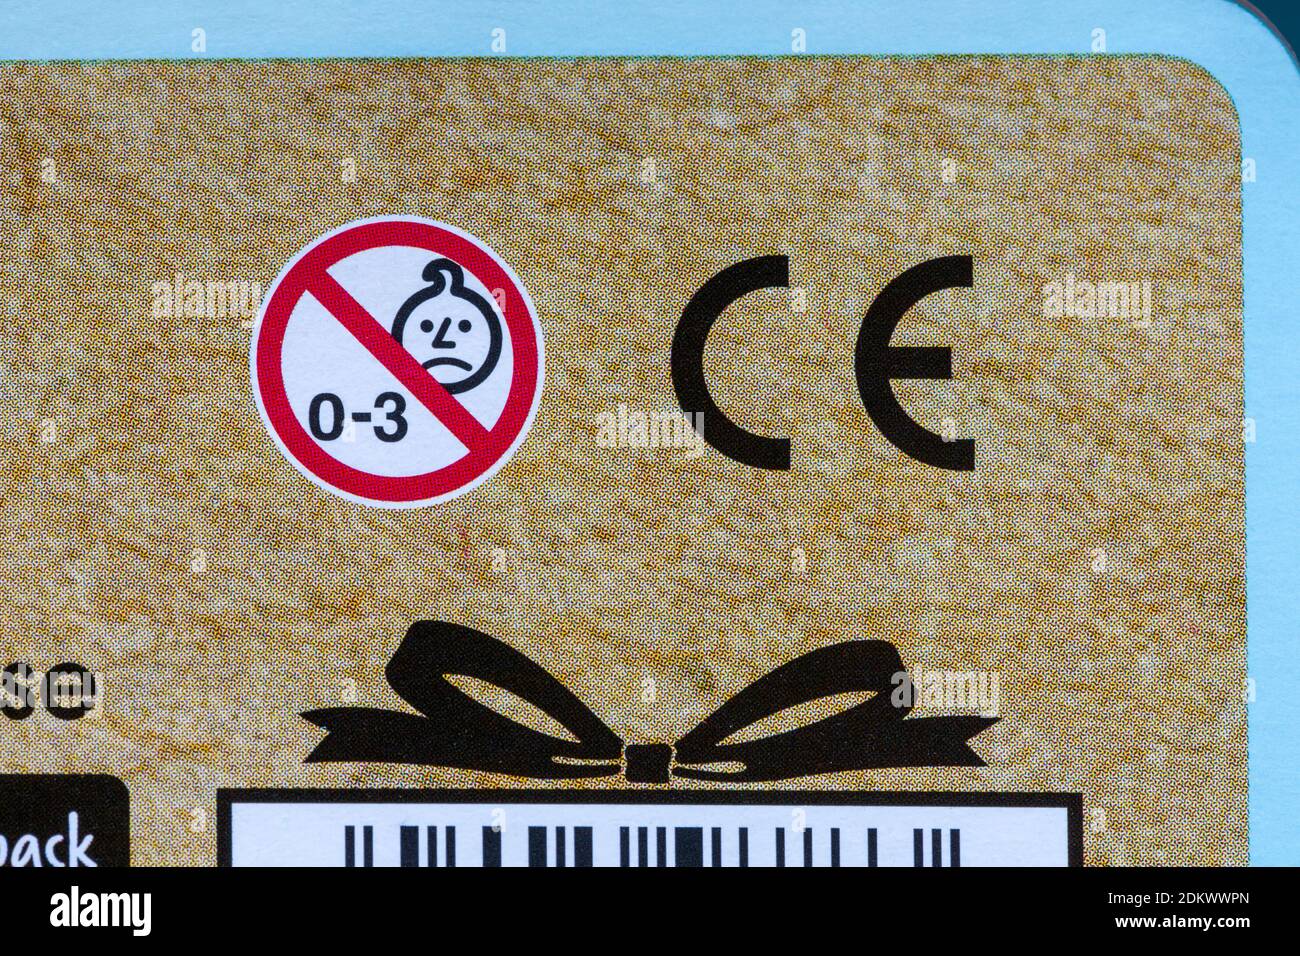 Logo di marcatura con simbolo del marchio CE con simbolo non adatto per 0-3 sulla confezione - non adatto per bambini di età inferiore a 36 mesi Foto Stock